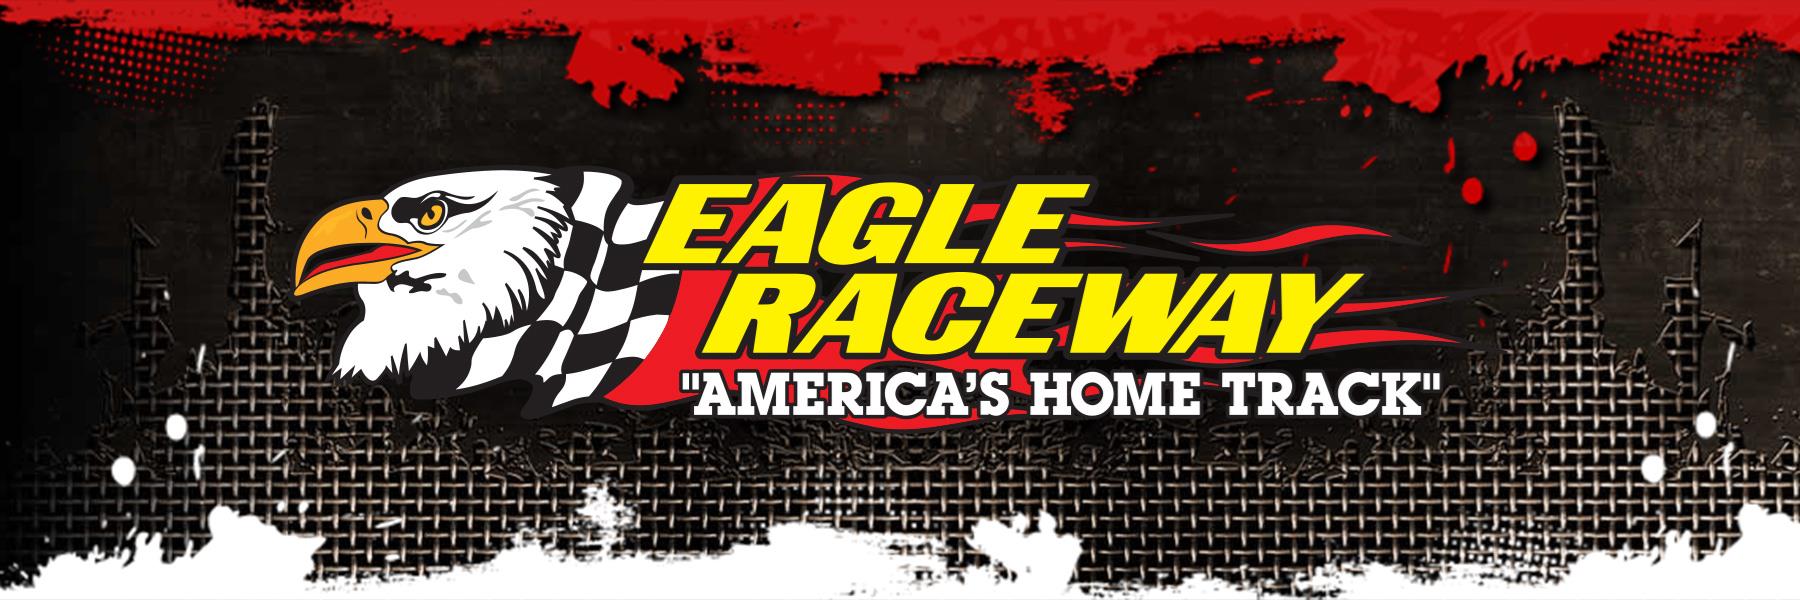 9/1/2013 - Eagle Raceway